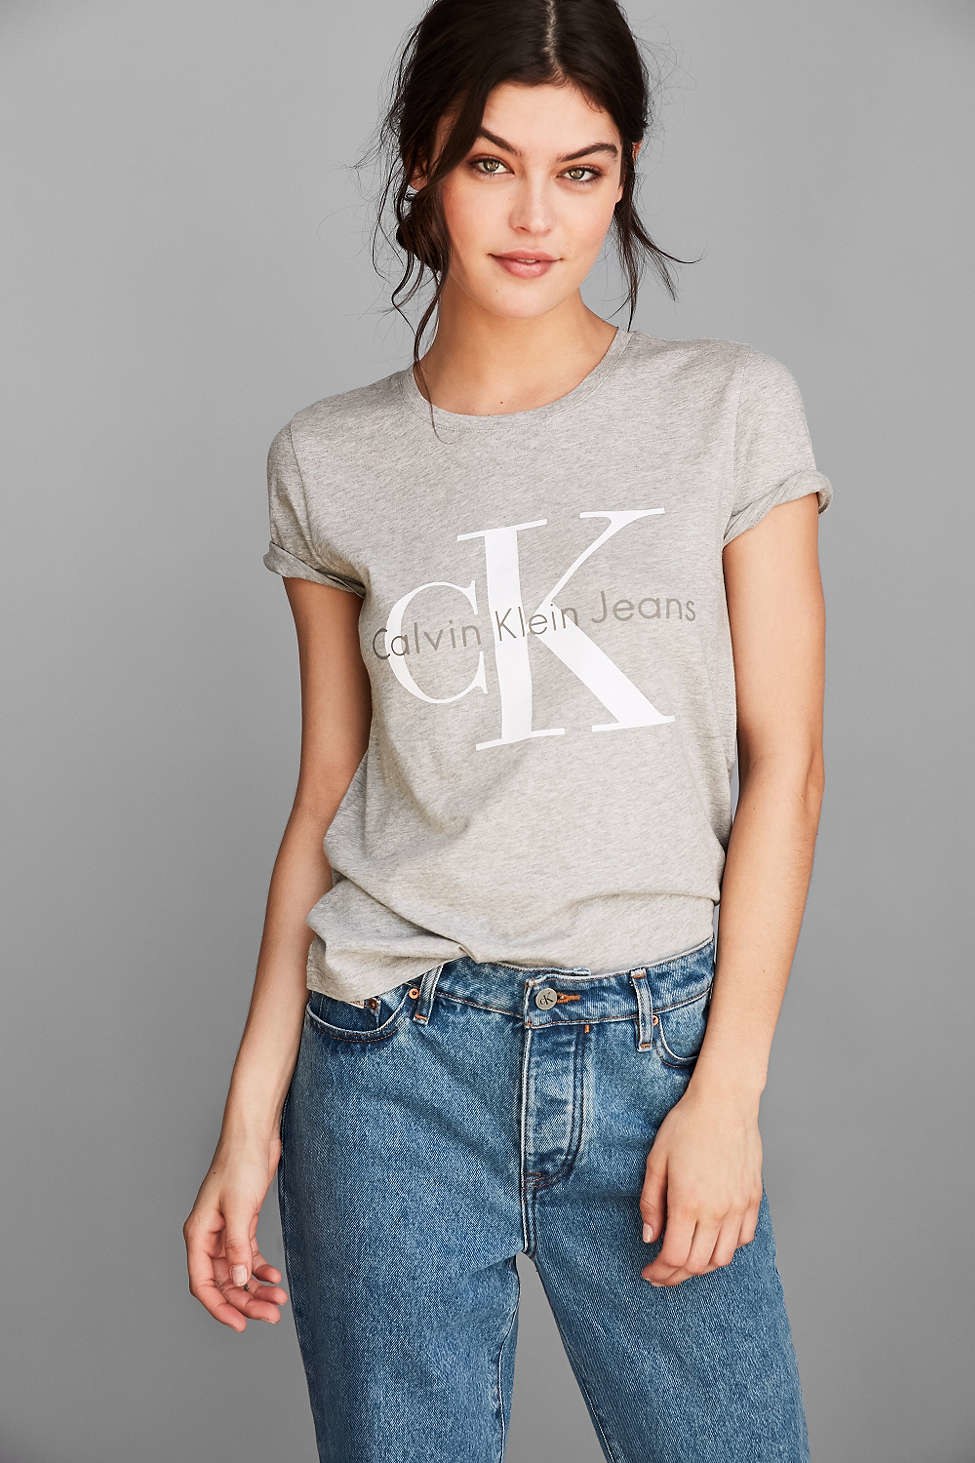 卡尔文 Klein t-shirt, [$39](http://rstyle.me/n/bqnctr823e)